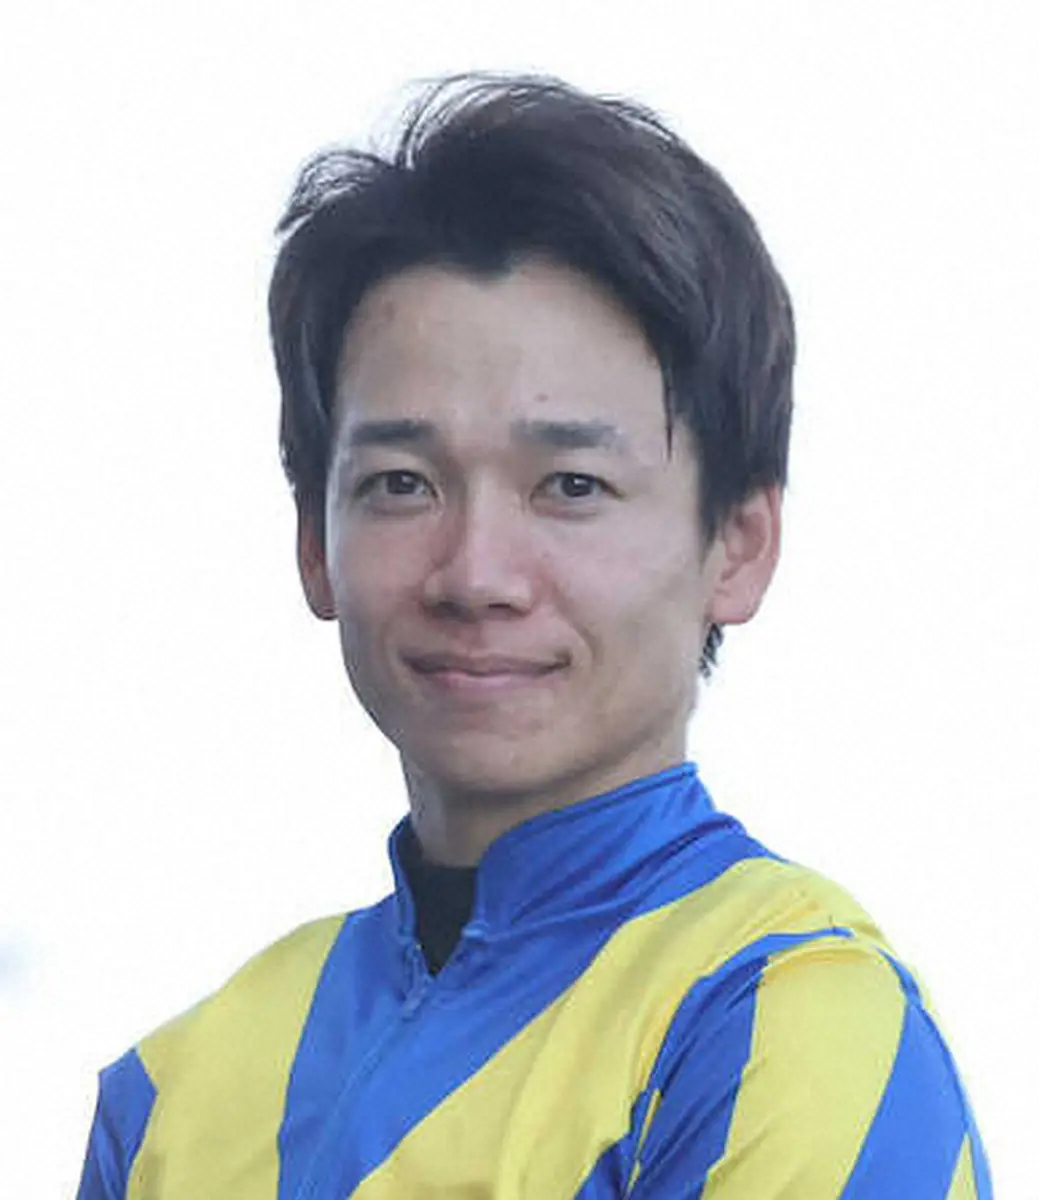 先週落馬負傷の松山弘平は今週の騎乗見送り、天皇賞・春ゴールドプリンセス鞍上未定